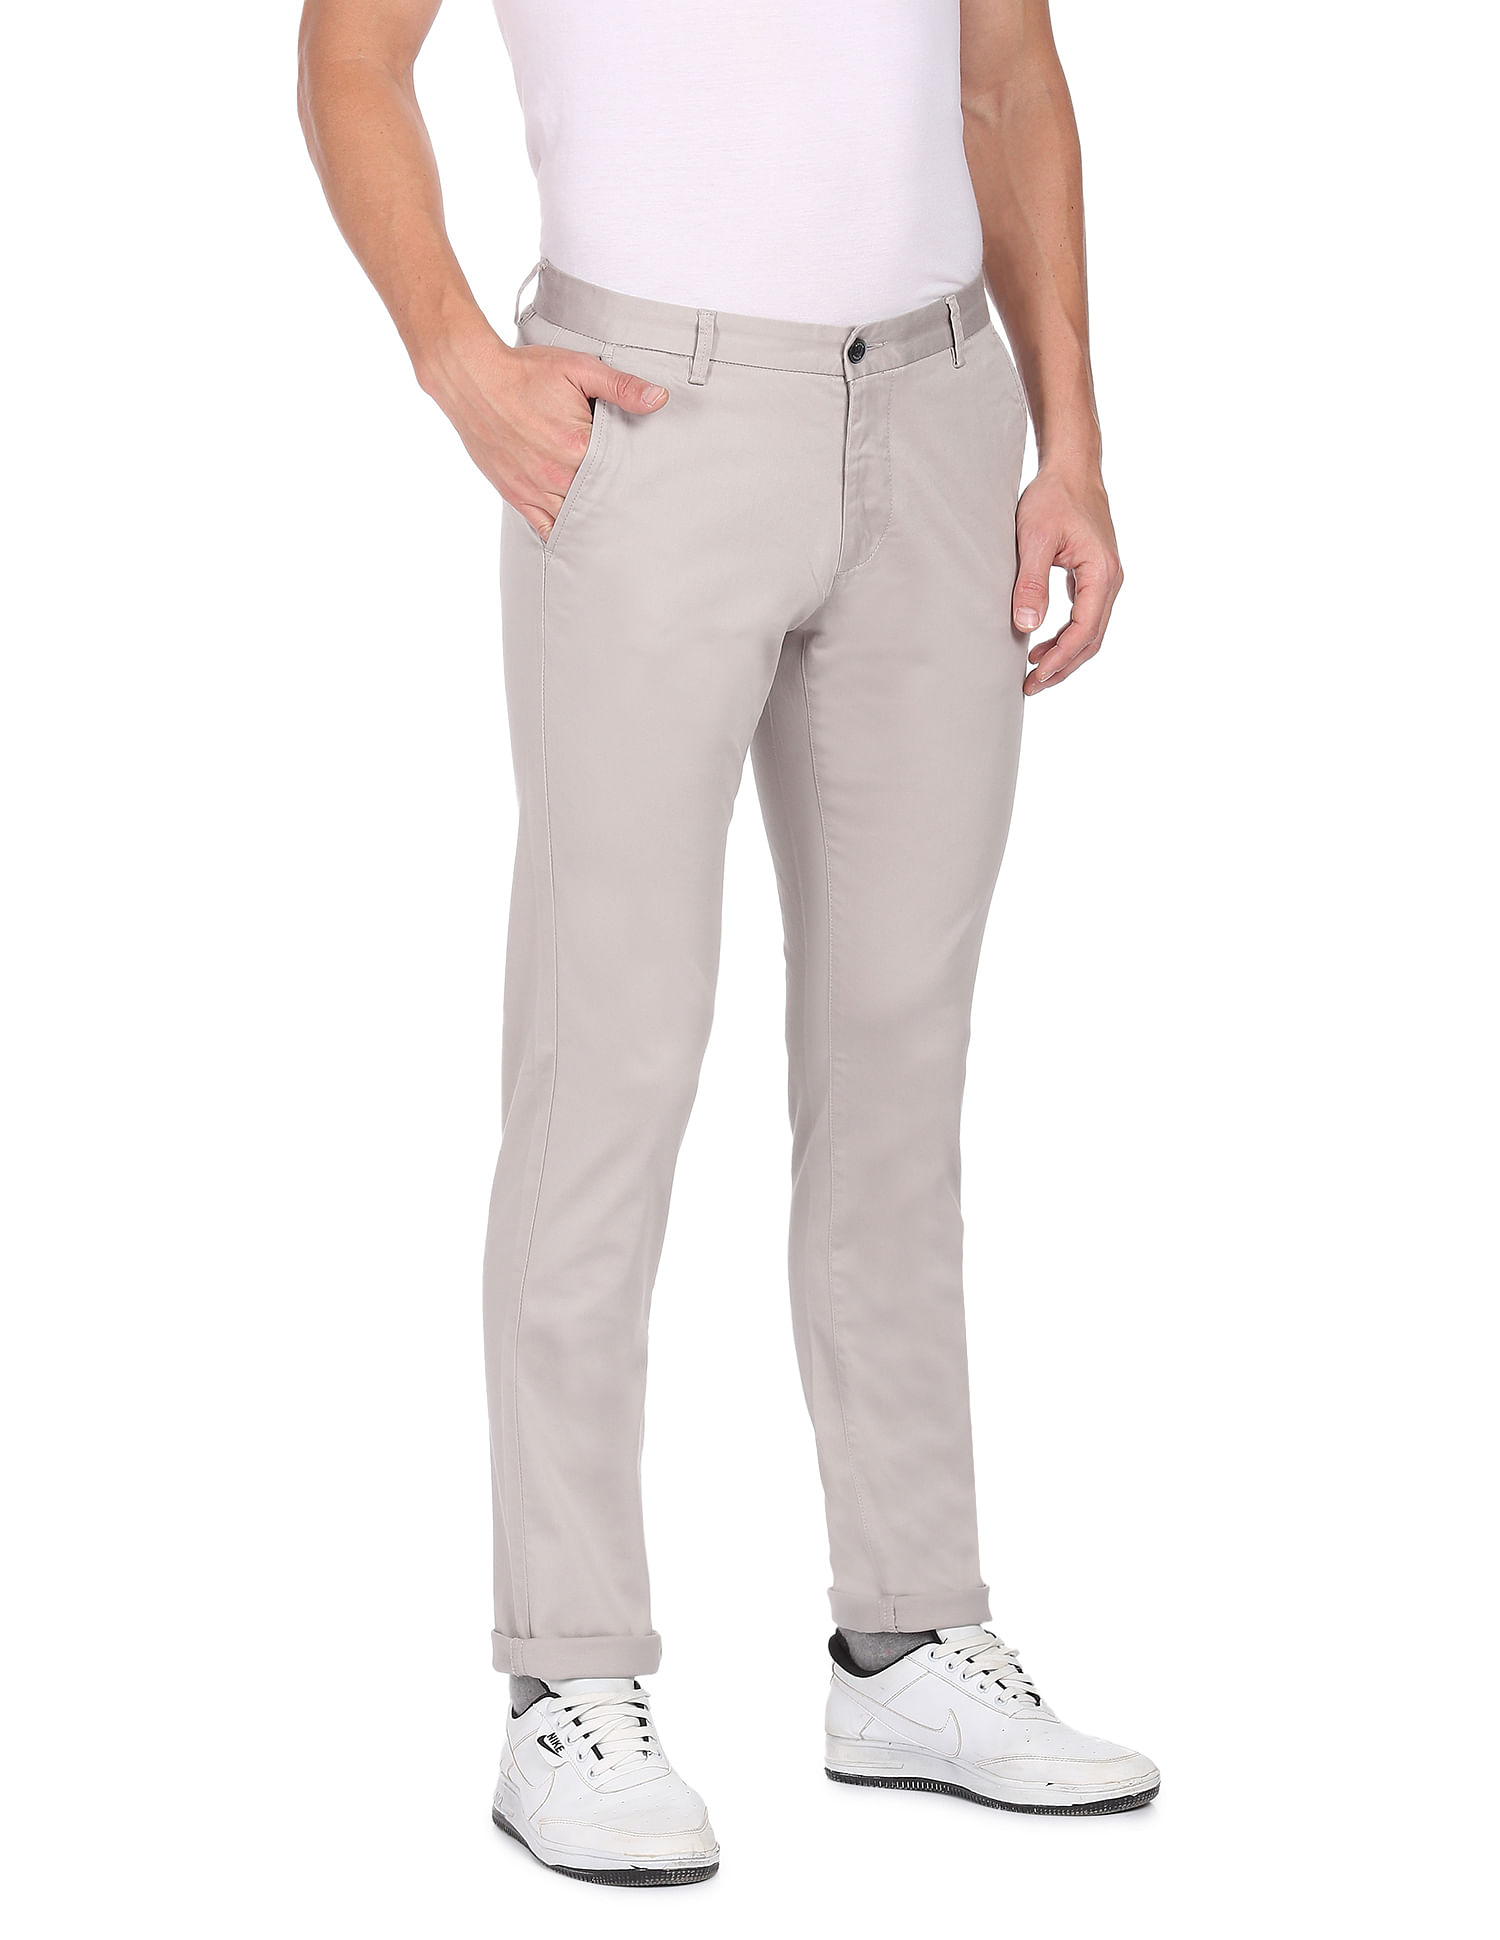 Naari Grey Skinny Fit Regular Trousers Trouser 3564955htm  Buy Naari Grey  Skinny Fit Regular Trousers Trouser 3564955htm online in India